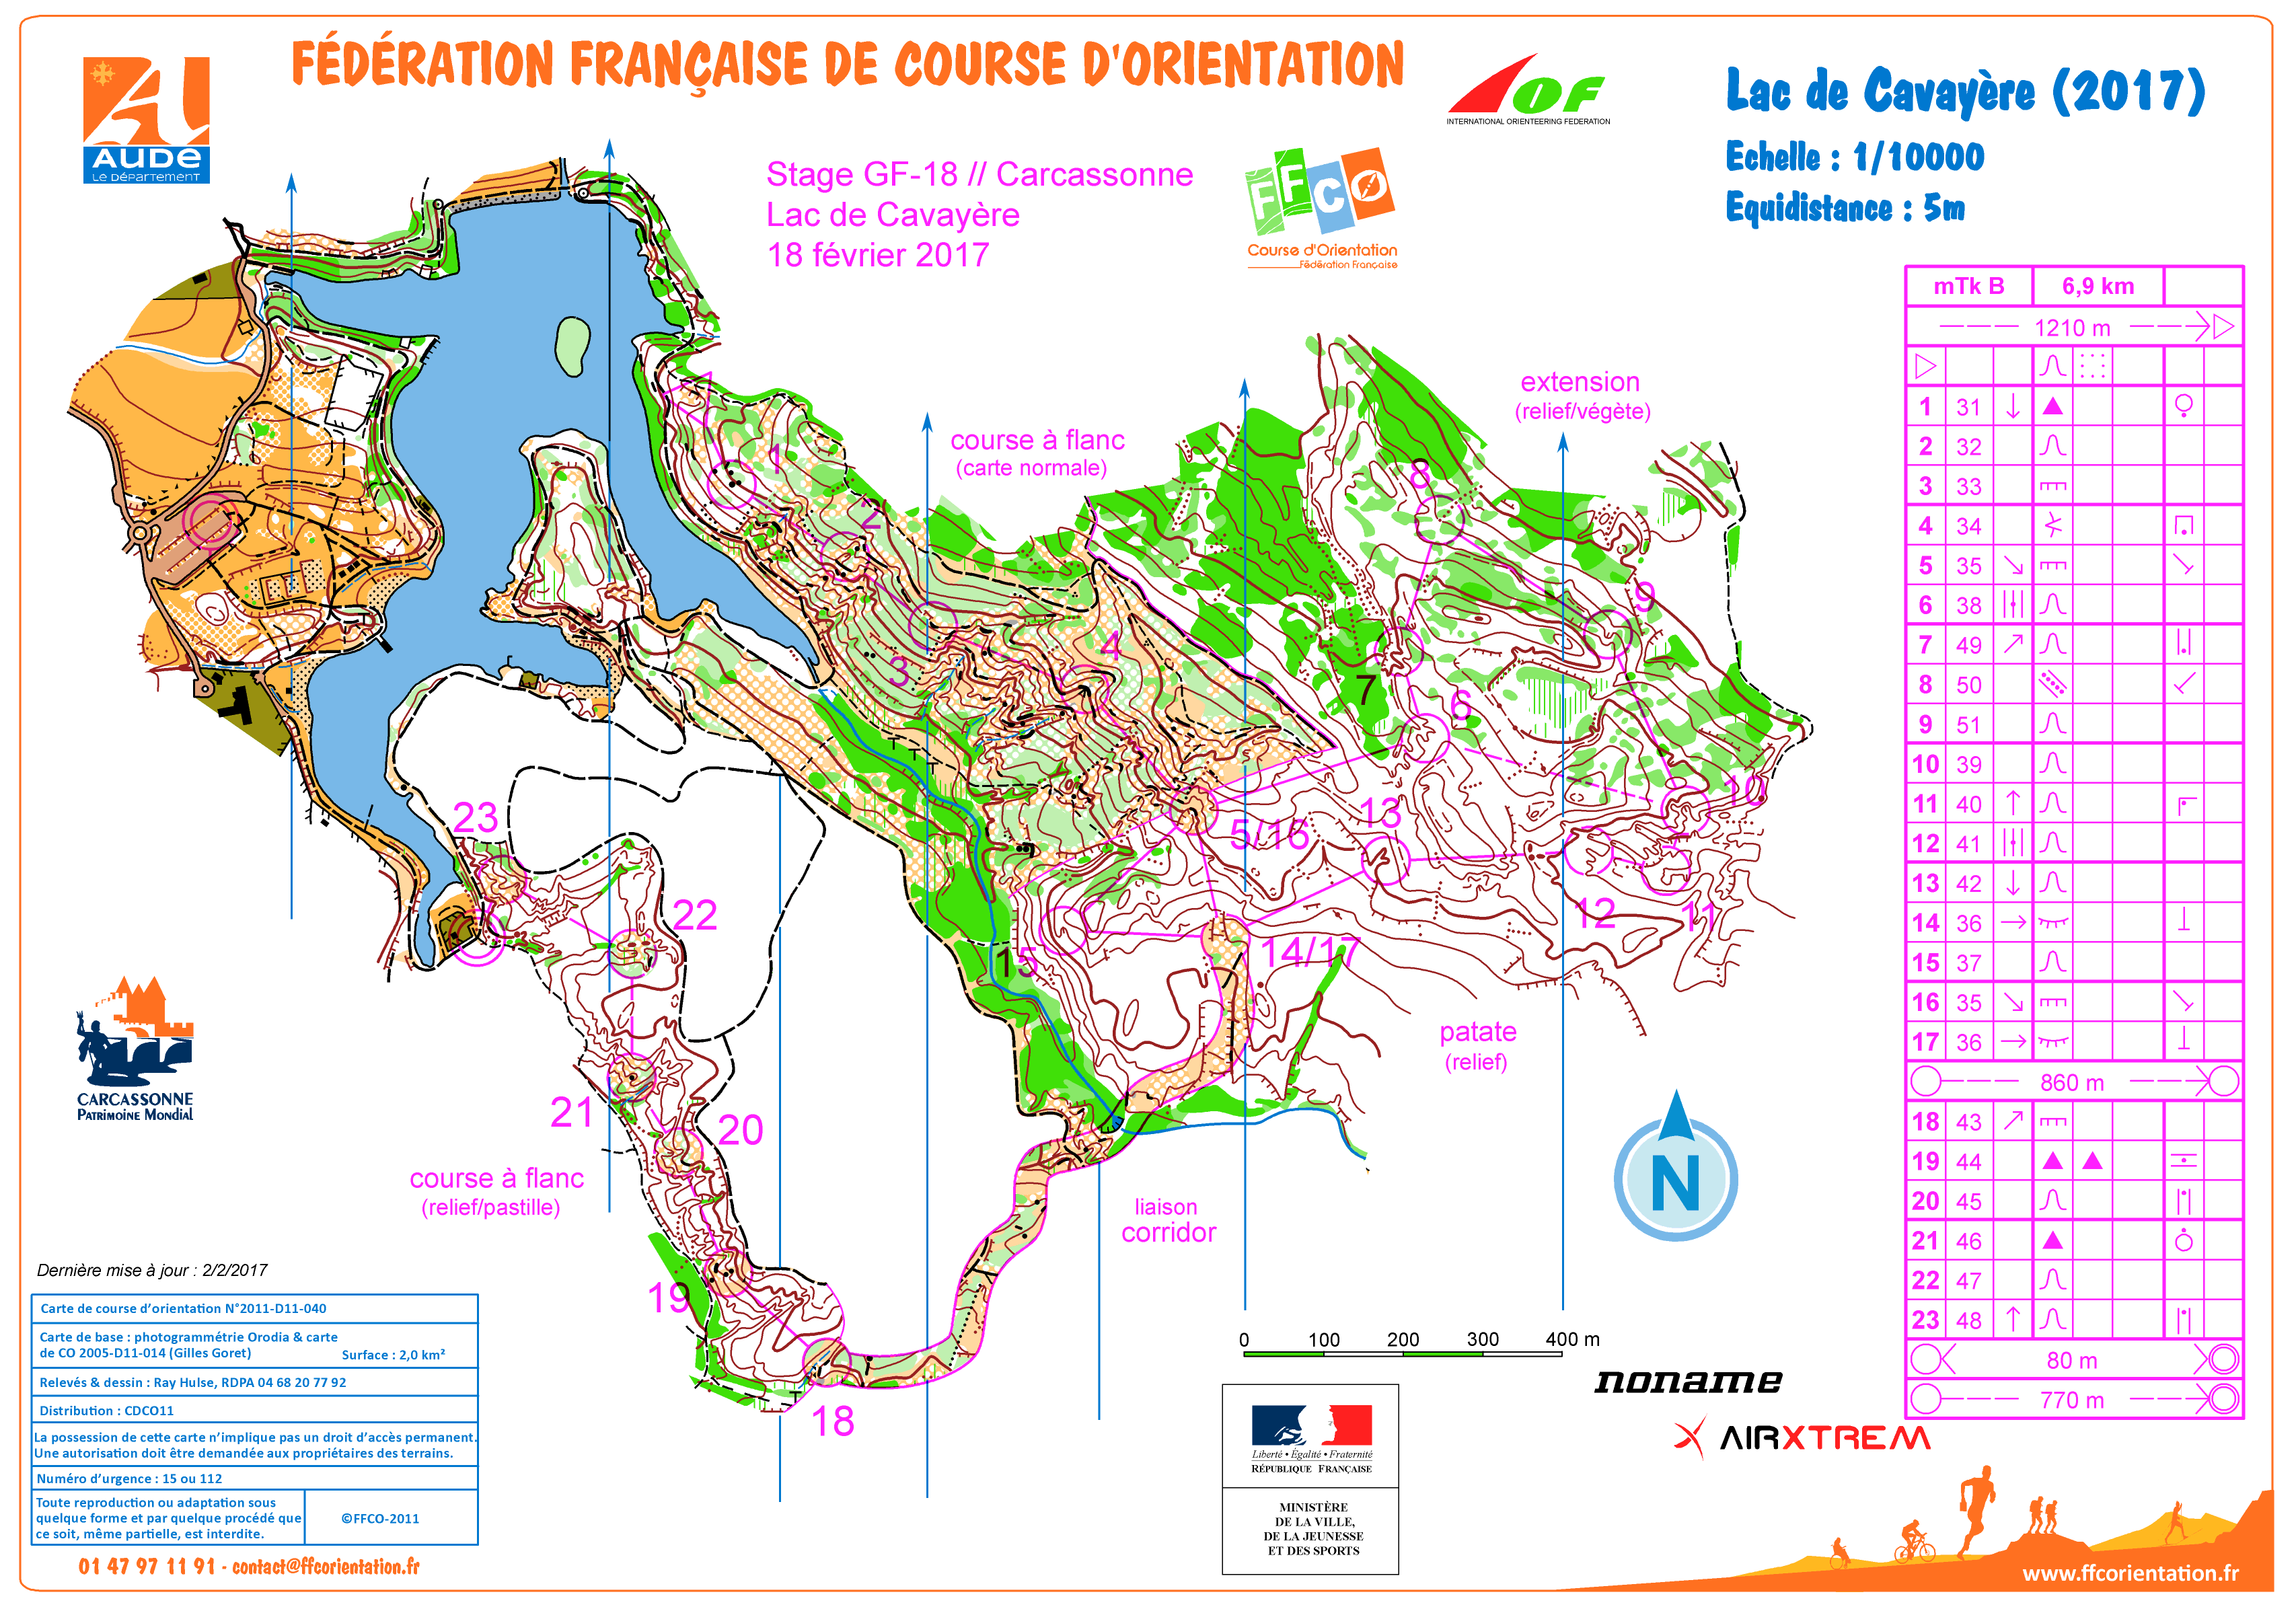 mTk Lac de Cavayère j2 stage gf-18 Carcassonne (18/02/2017)